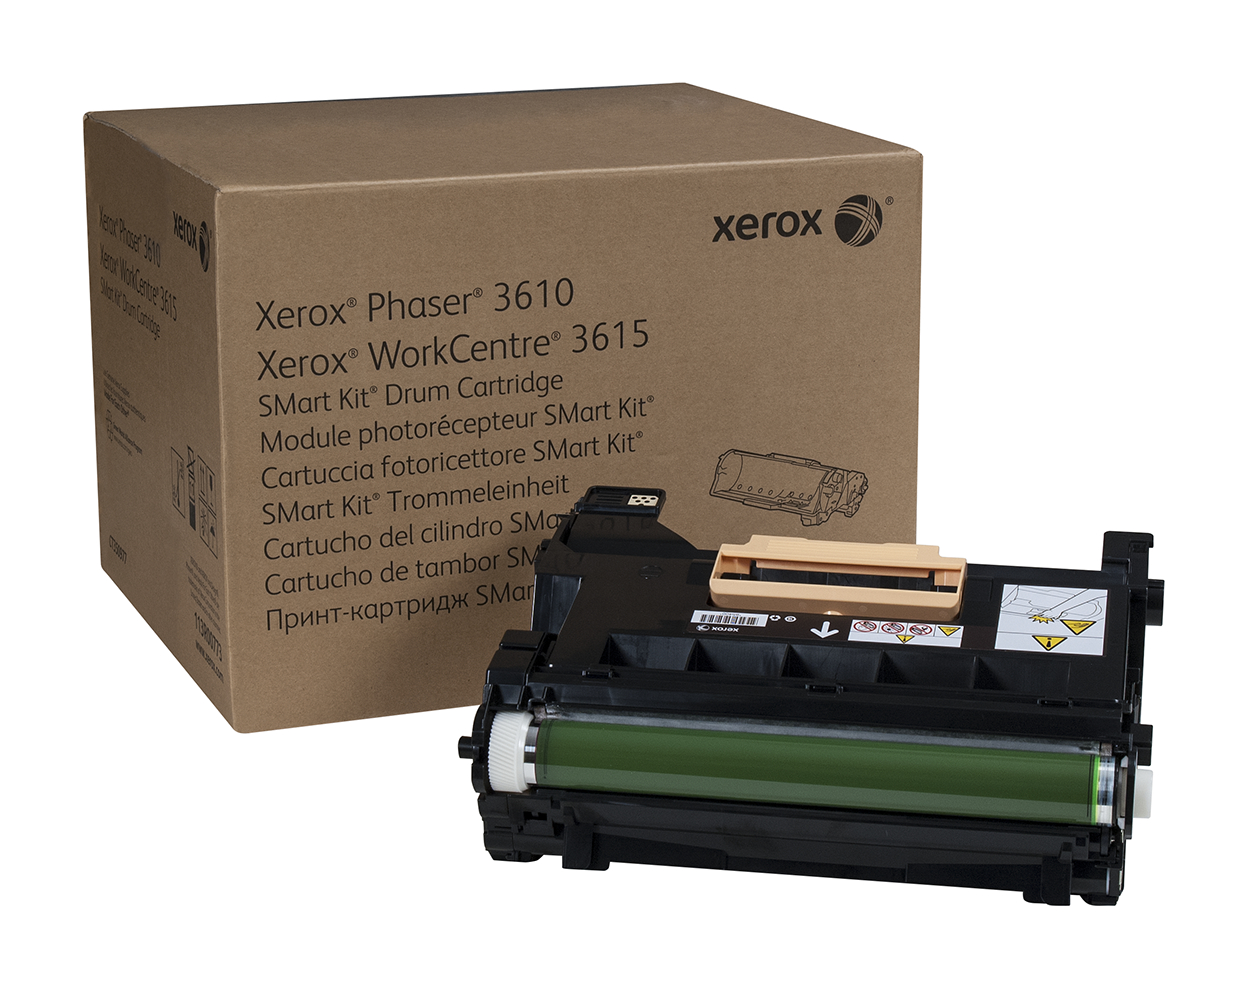 Smart Kit Drum Cartridge, Phaser 3610/WorkCentre 3615/3655 113R00773  Genuine Xerox Supplies